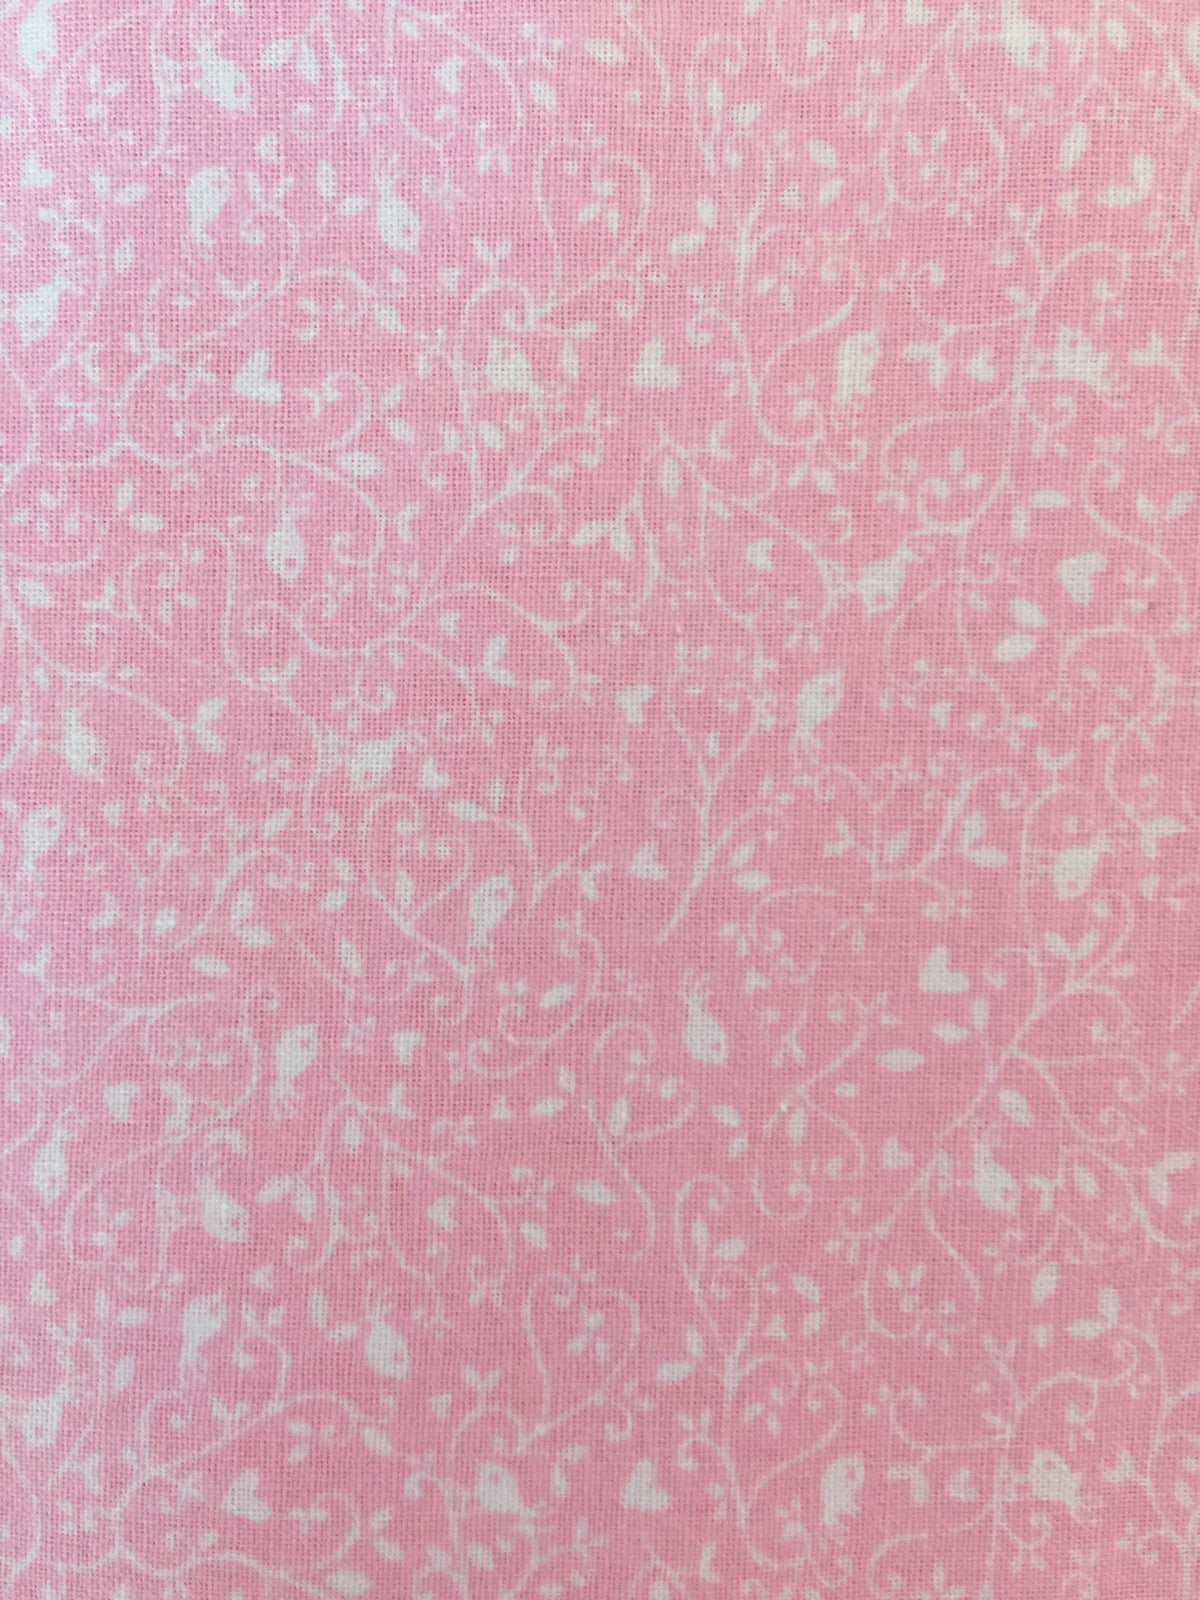 Pink lemonade print close up.